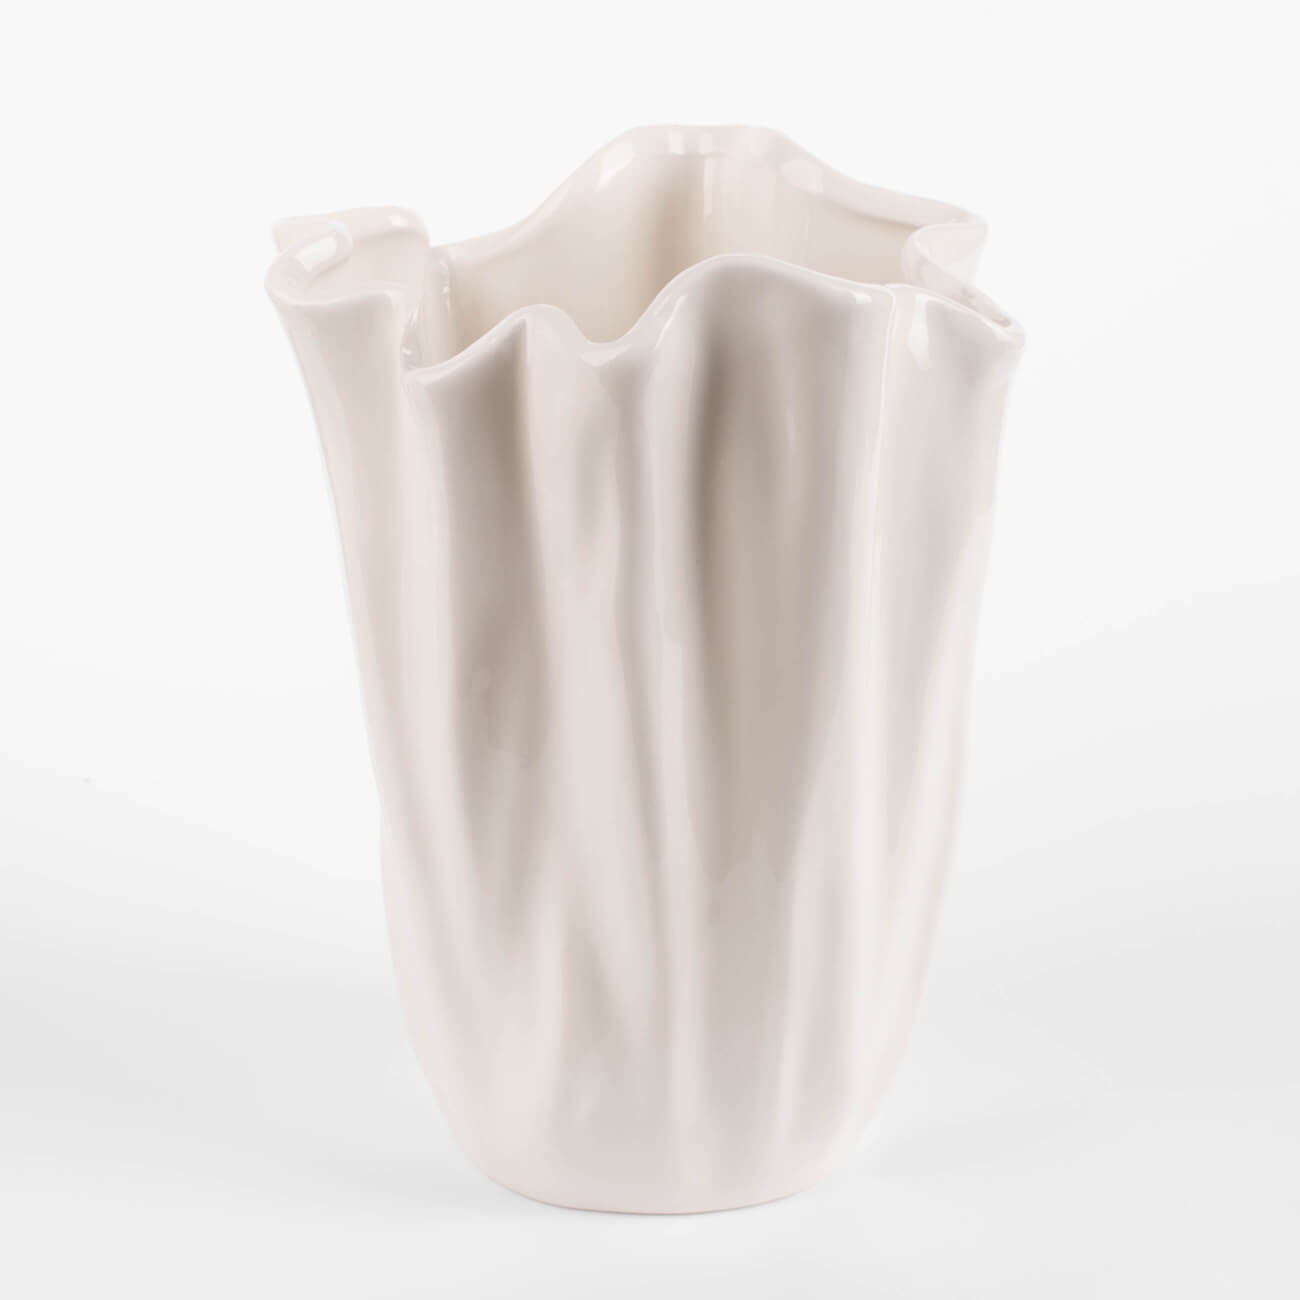 Ваза для цветов, 24 см, керамика, молочная, Мятый эффект, Crumple ваза для ов 24 см керамика молочная мятый эффект crumple